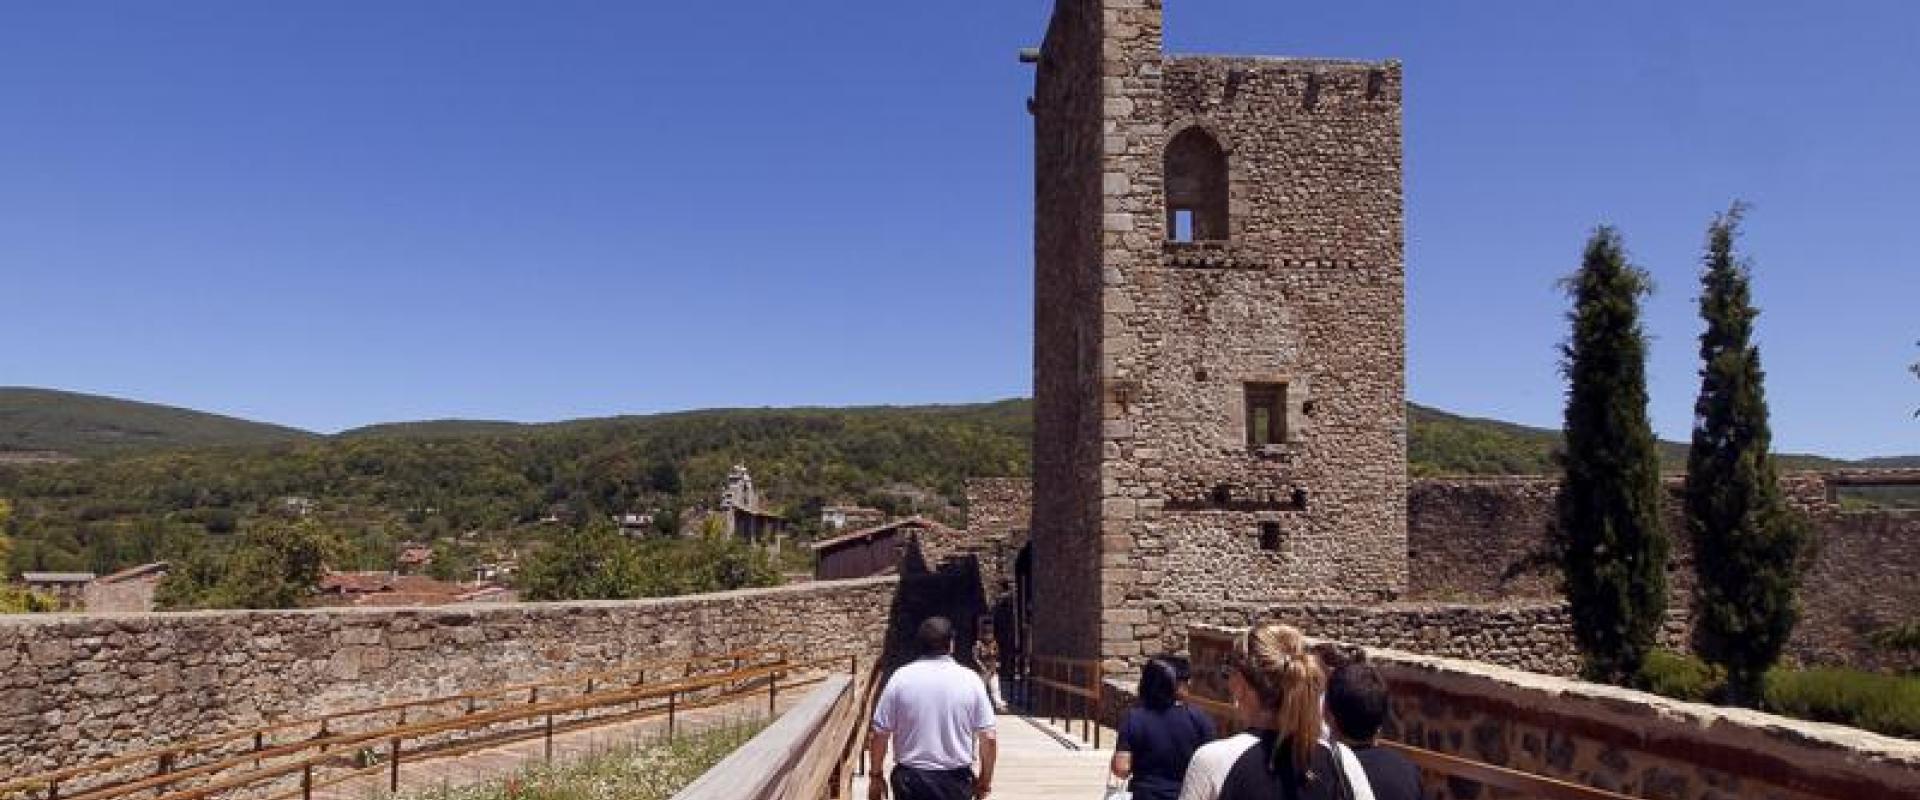 San Martin del Castañar Castle